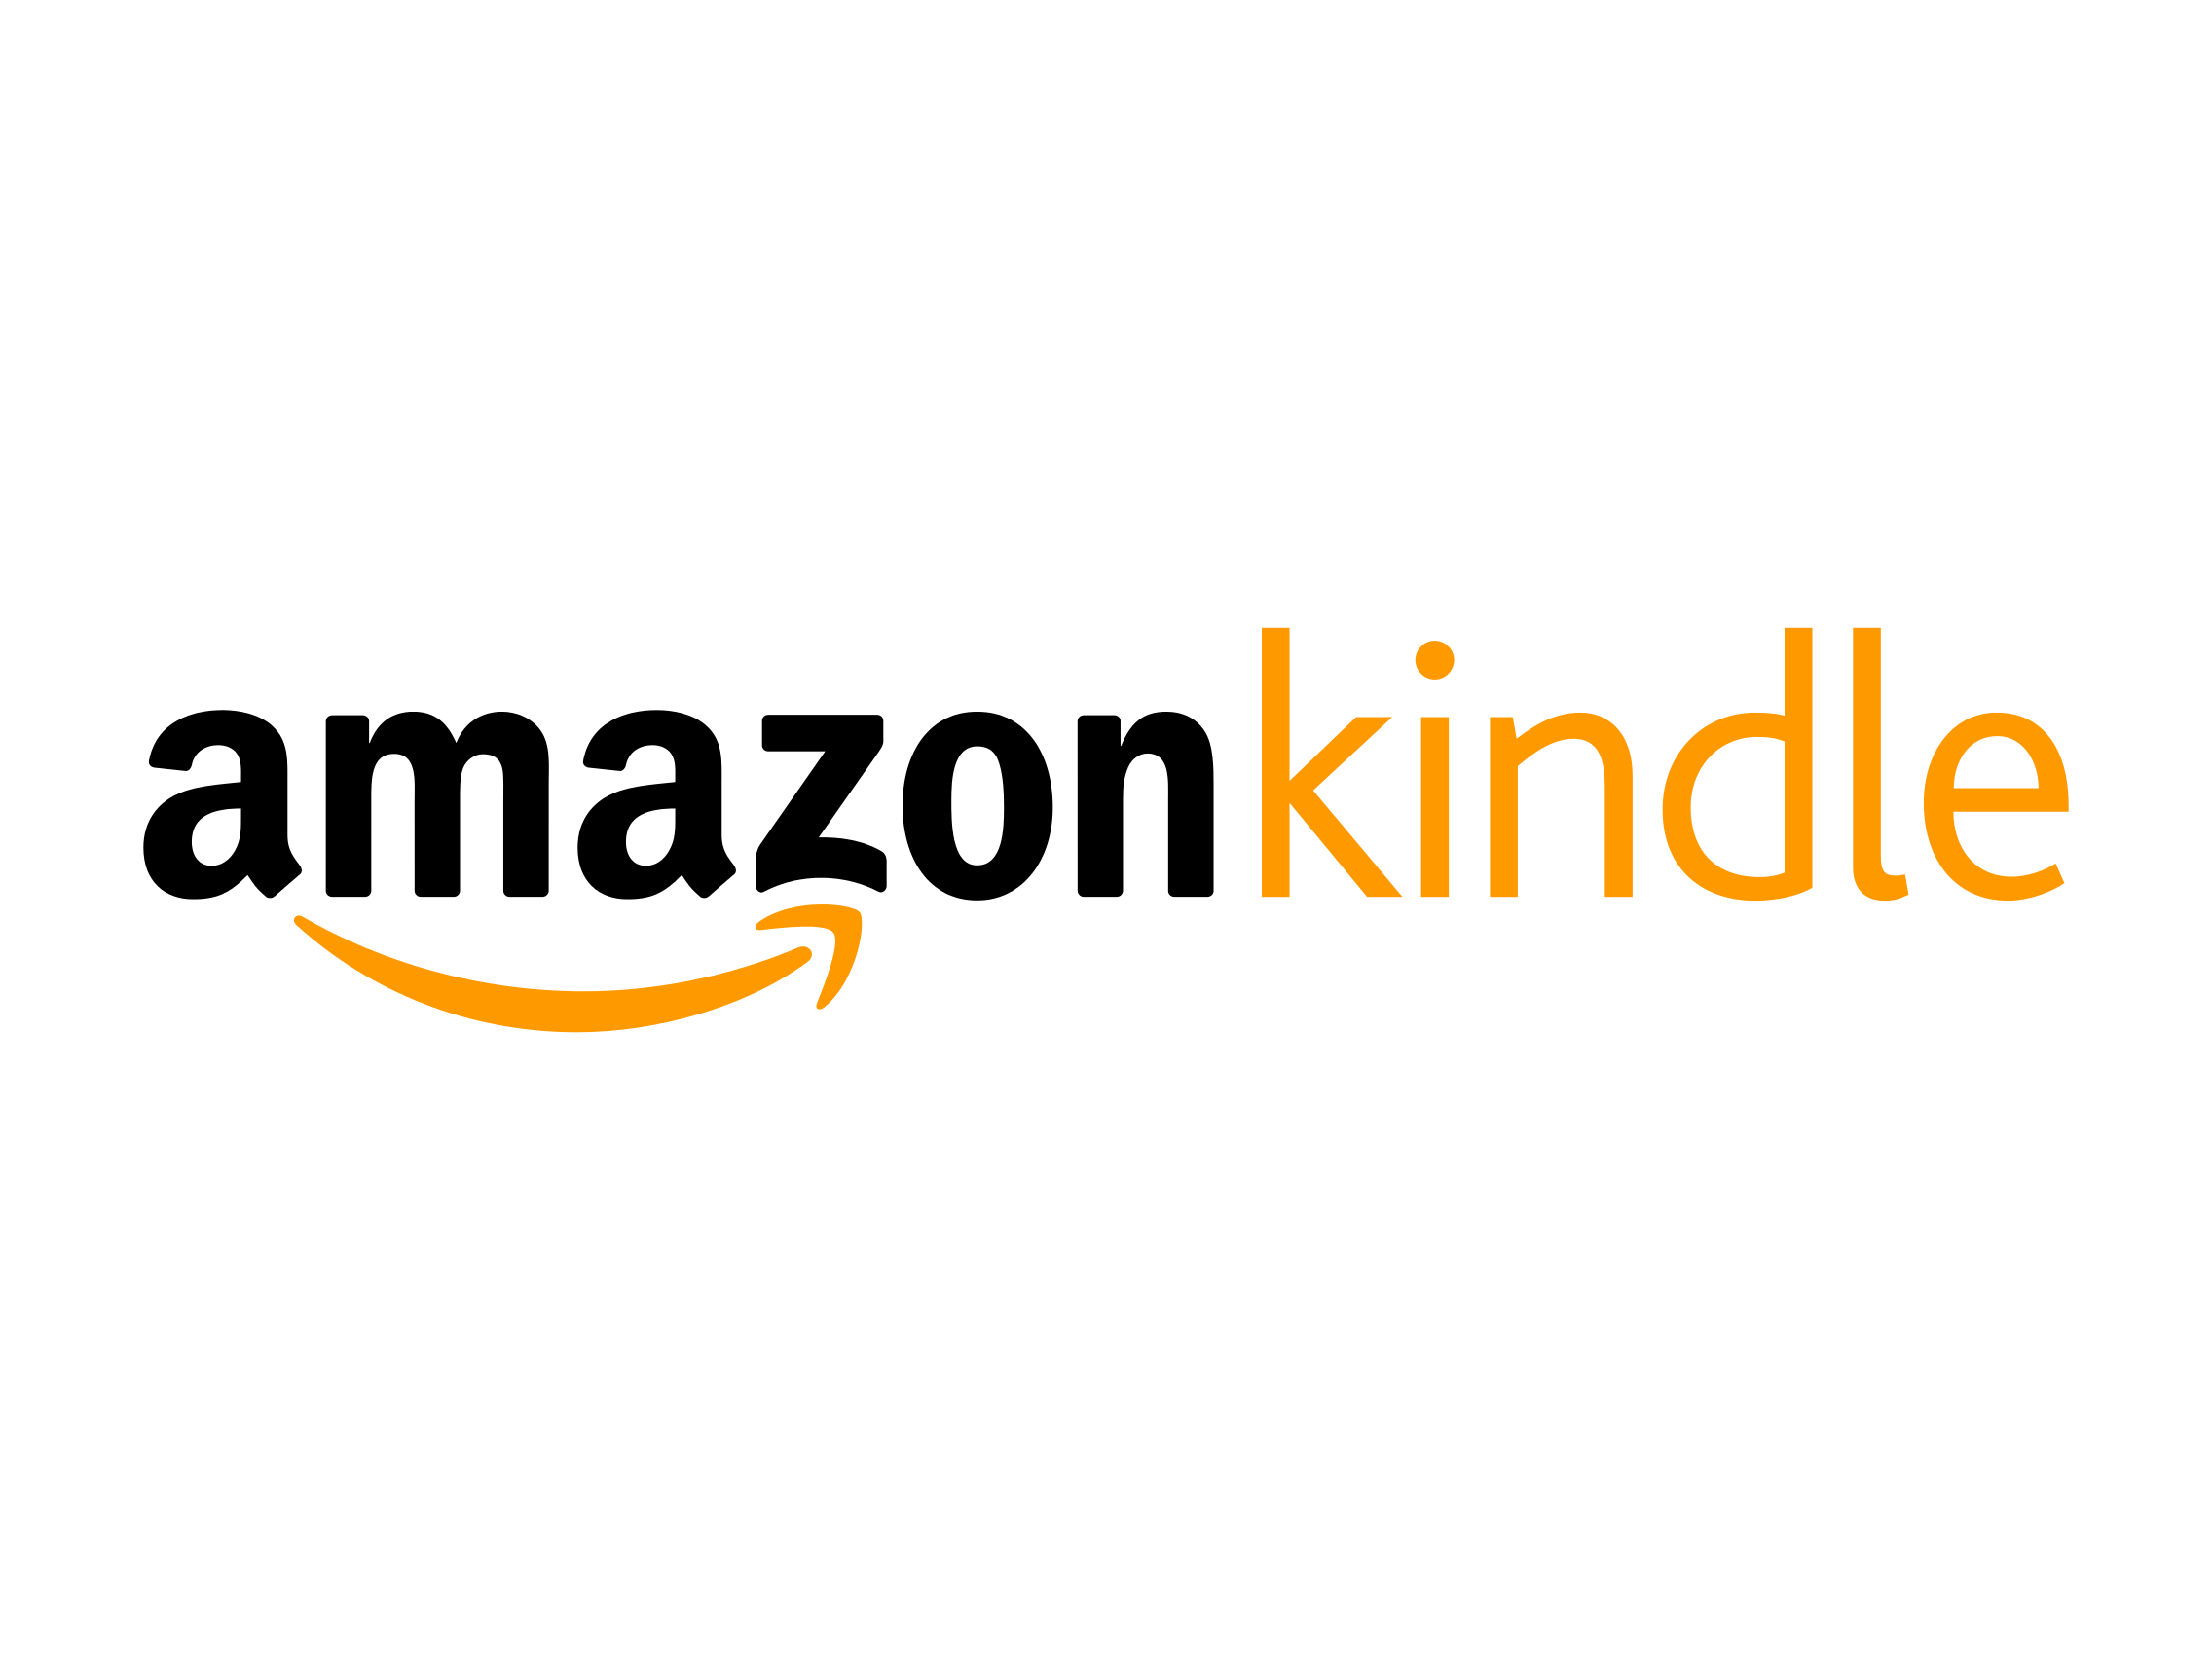 Kindle Logo - Amazon Kindle logo - Logok